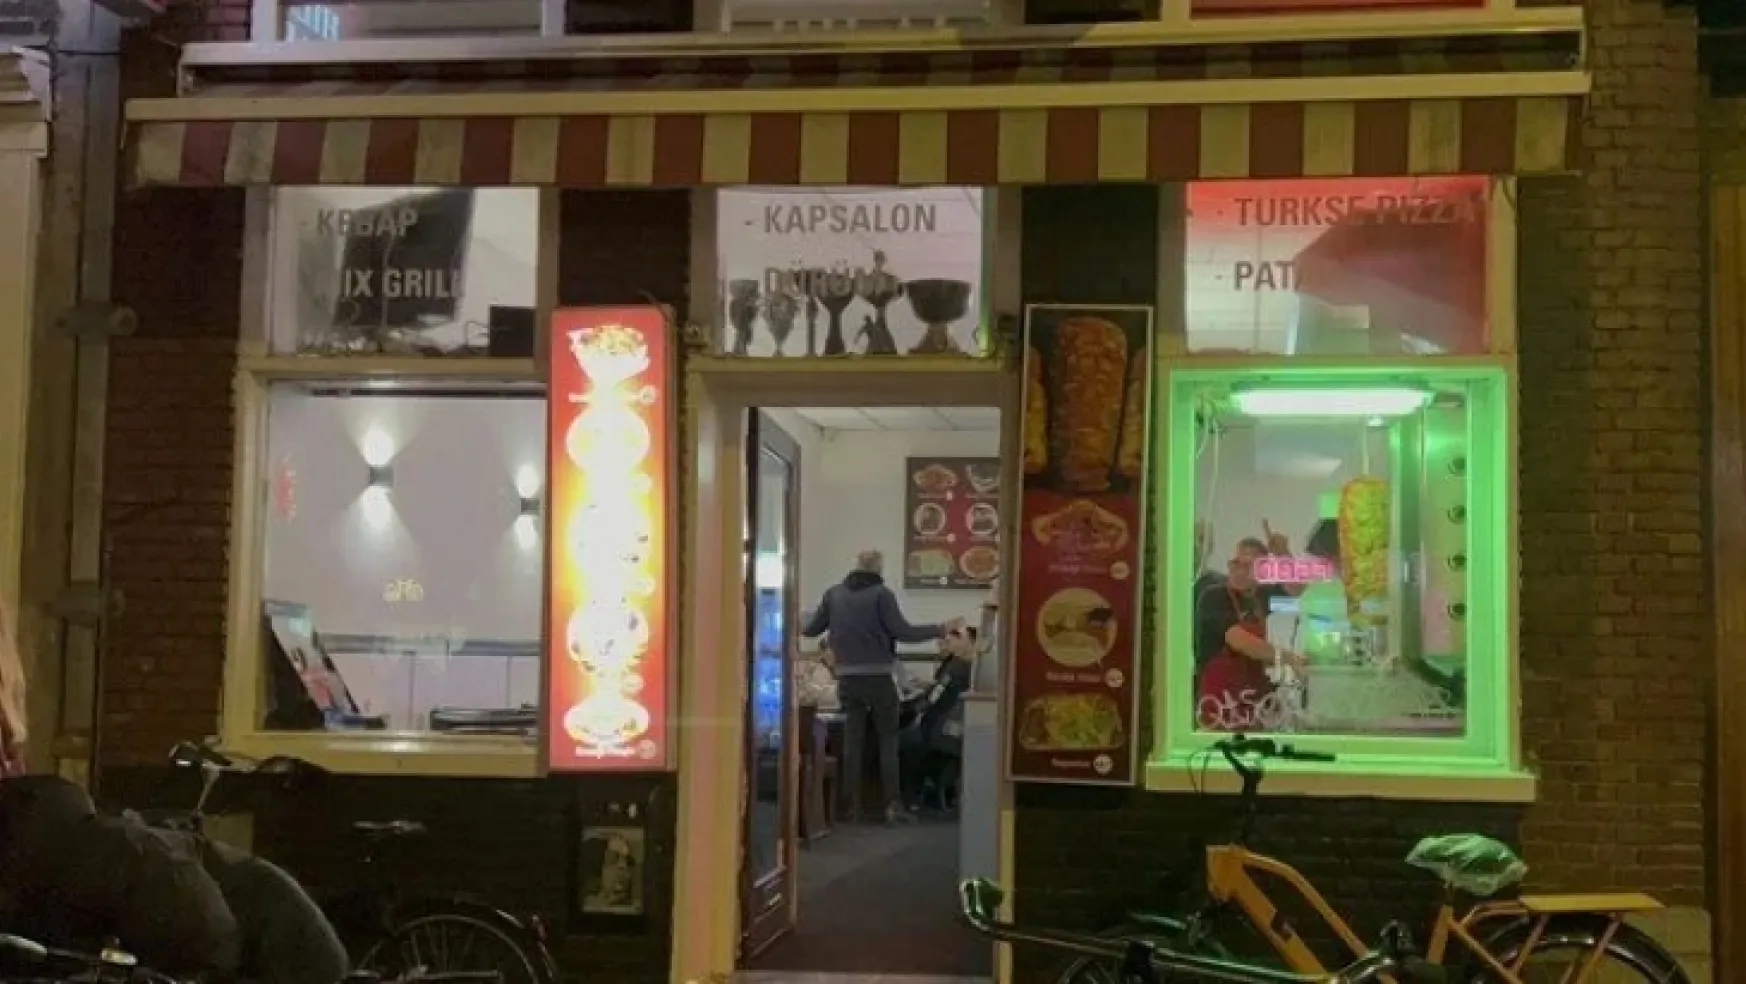 Hollanda'da en çok sipariş verilen yemek Türk döneri oldu